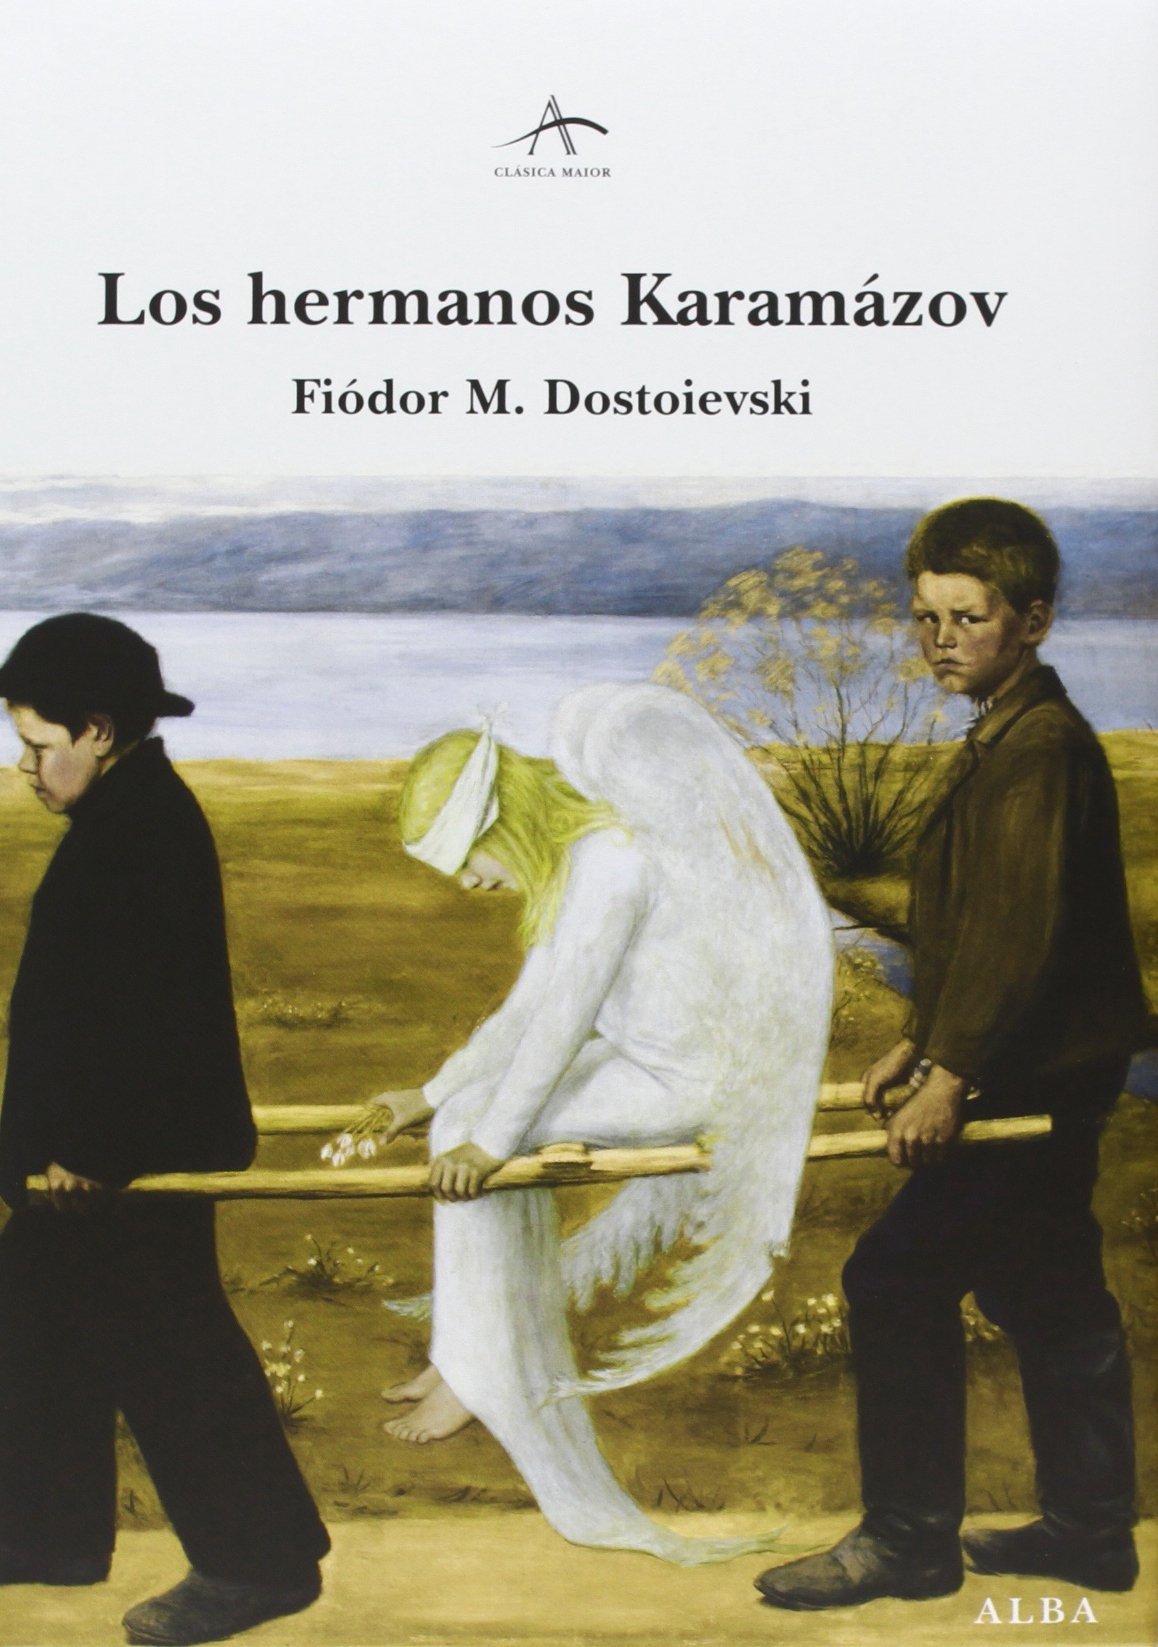 "The Karamazov Brothers" by Fyodor Dostoyevsky